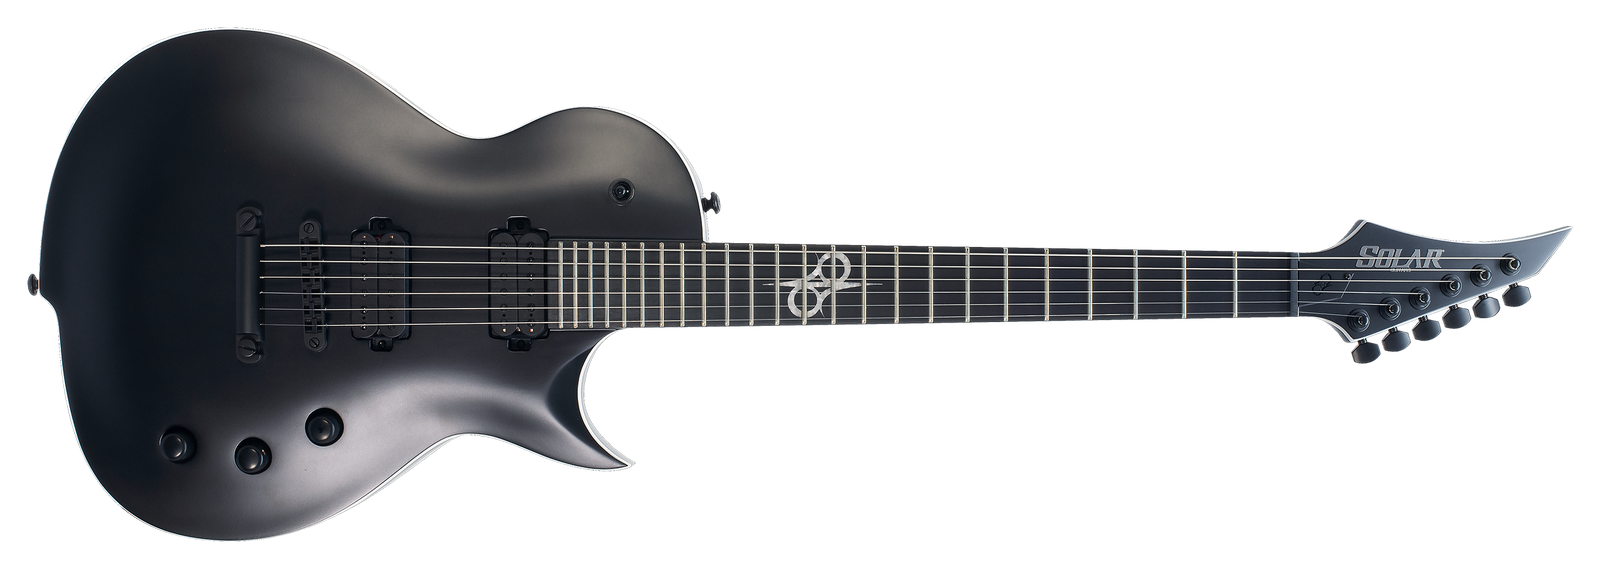 SOLAR GC2.6C Electric Guitar - Carbon Black Matte